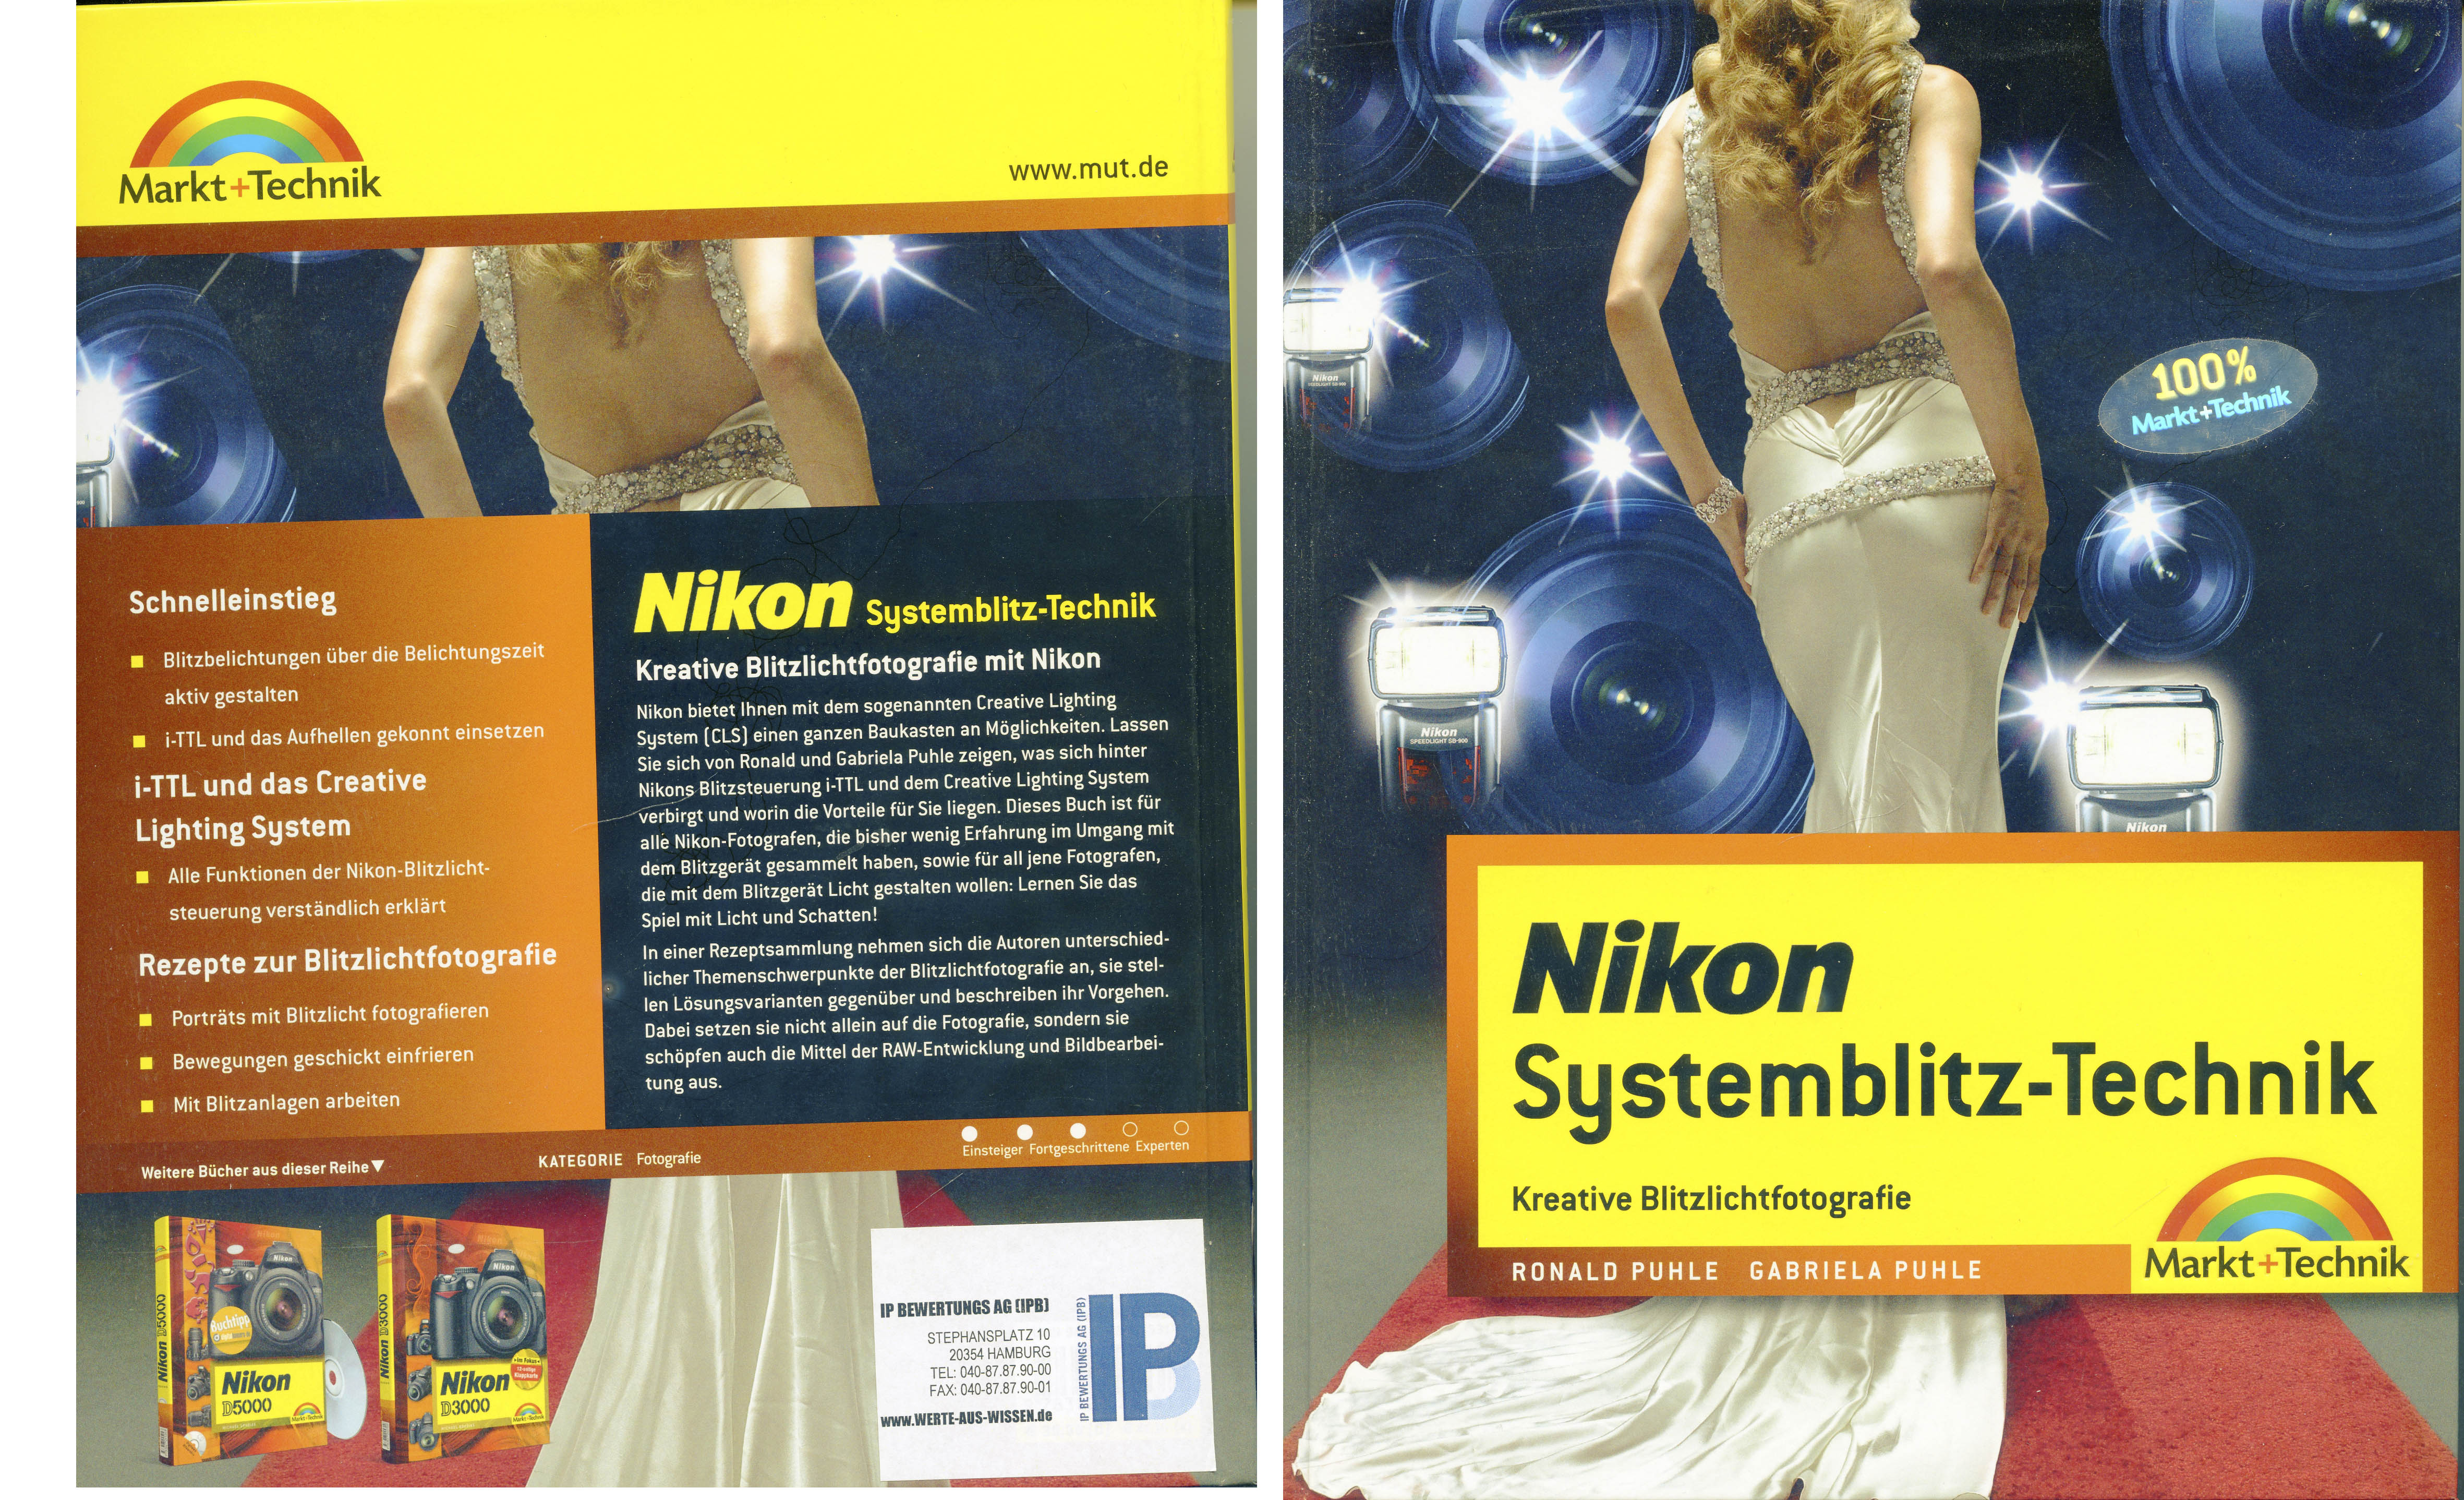 Nikon - Systemblitztechnik